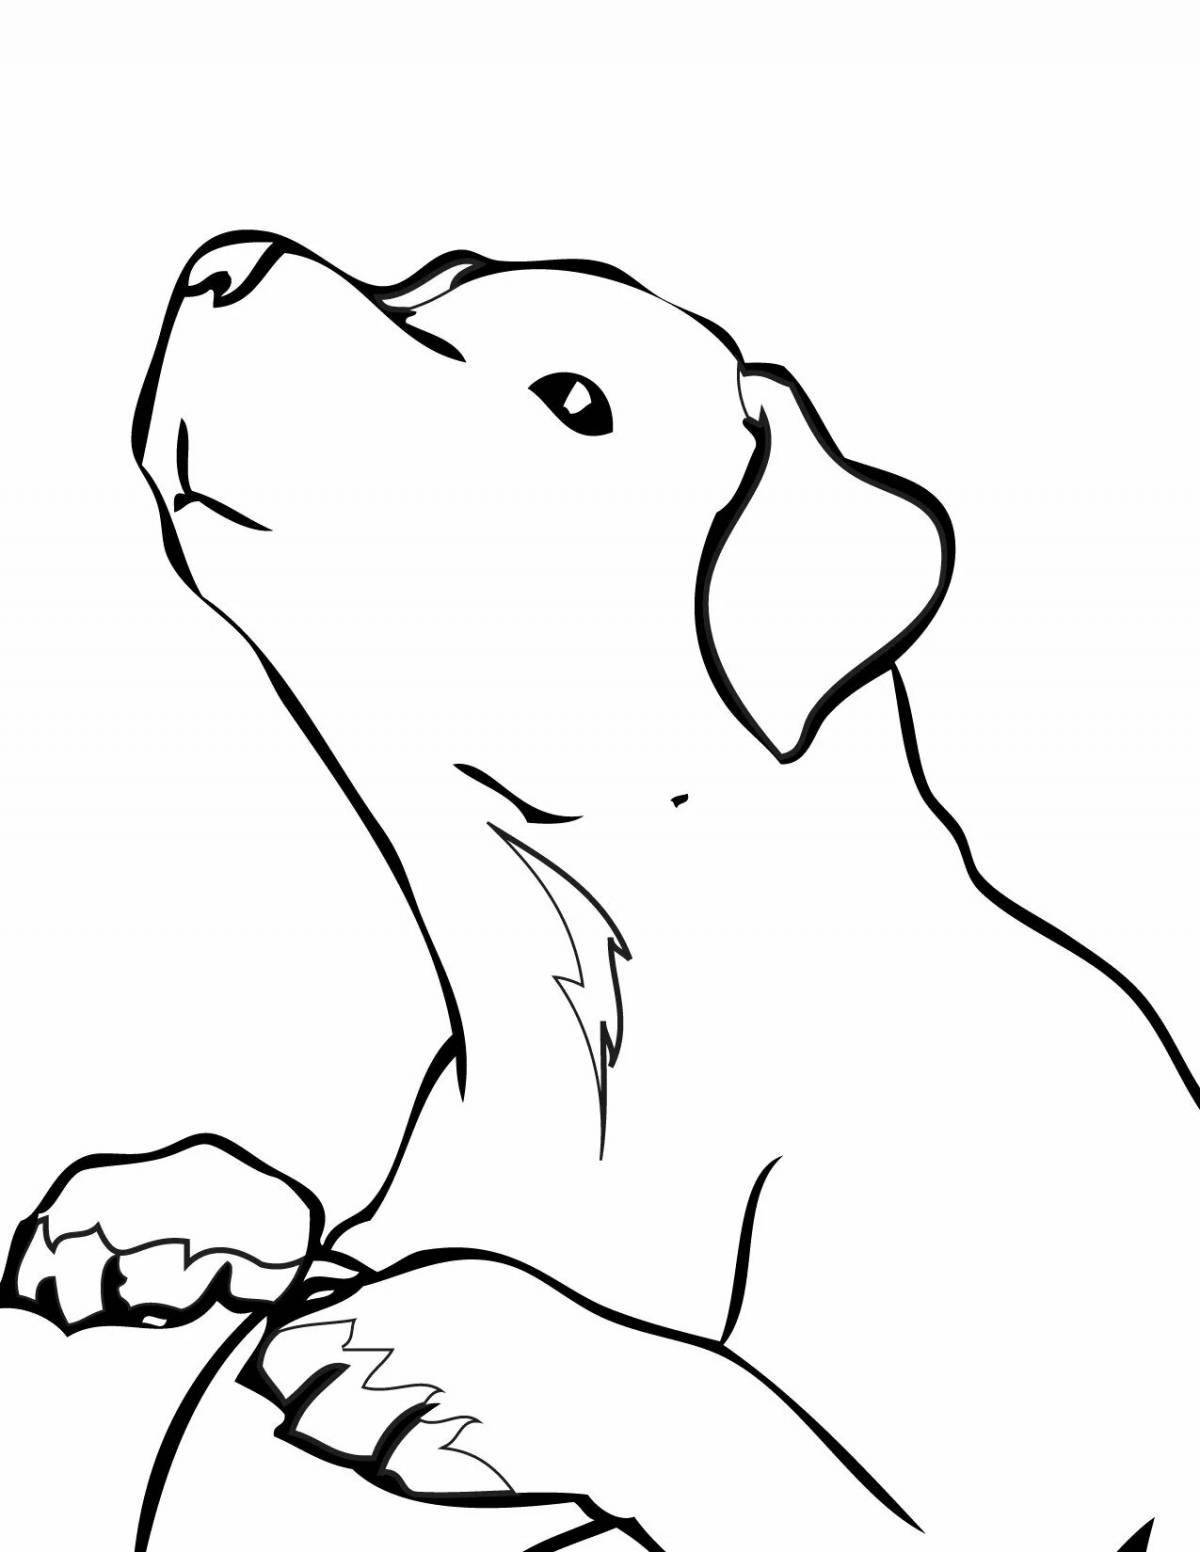 Labrador live coloring page